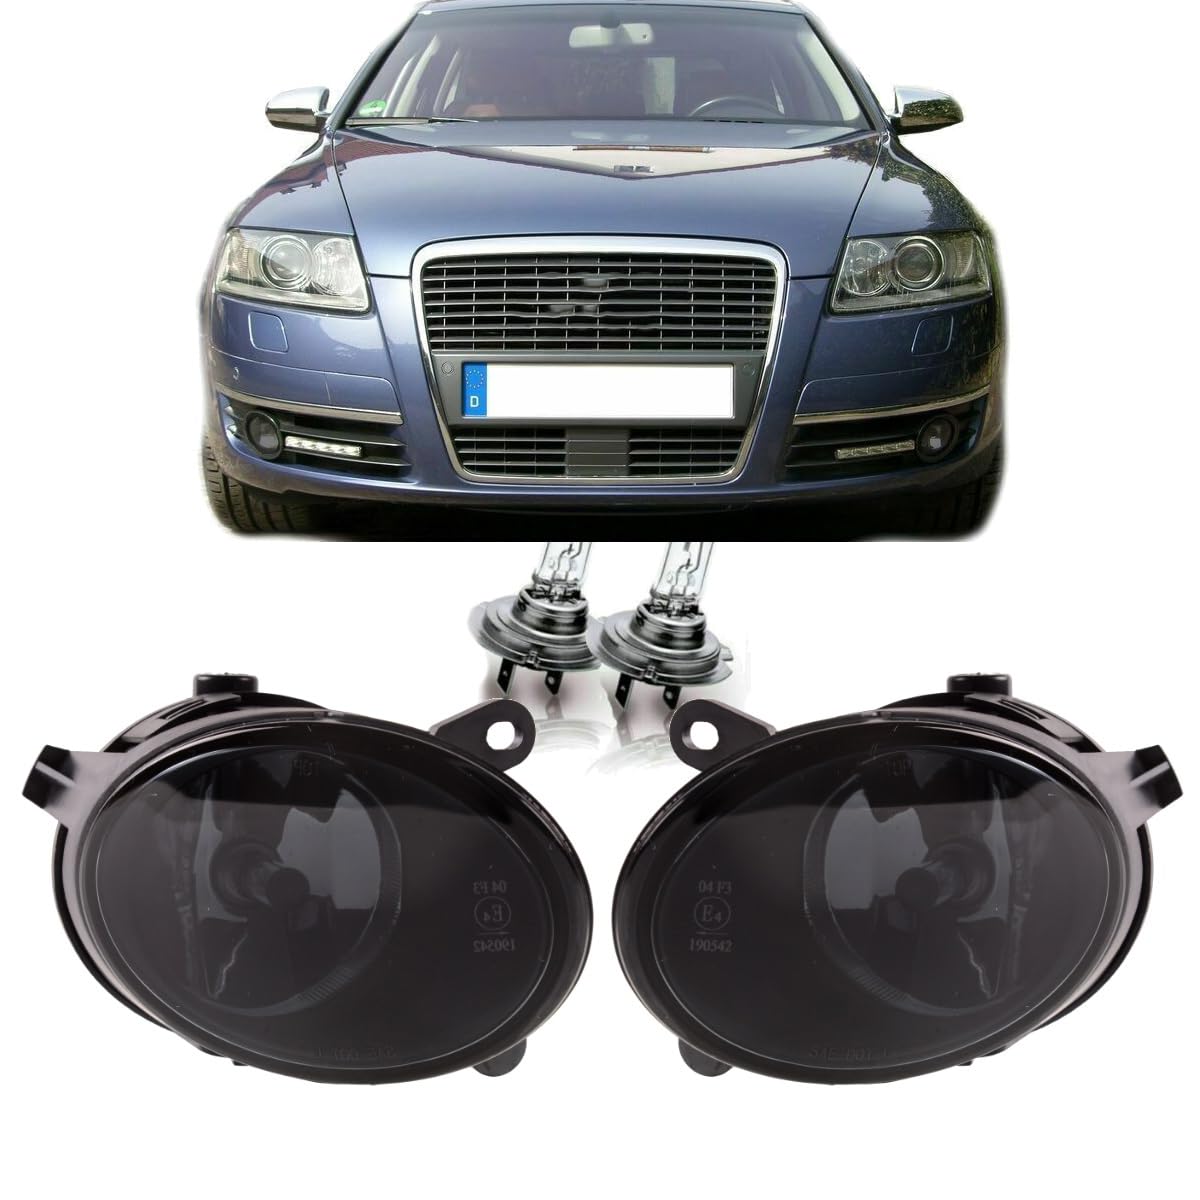 DM Autoteile 4154 Satz H7 Nebelscheinwerfer Klarglas Smoke kompatibel für Audi A6(4F2/4F5) Bj 2004-2008 von DM Autoteile